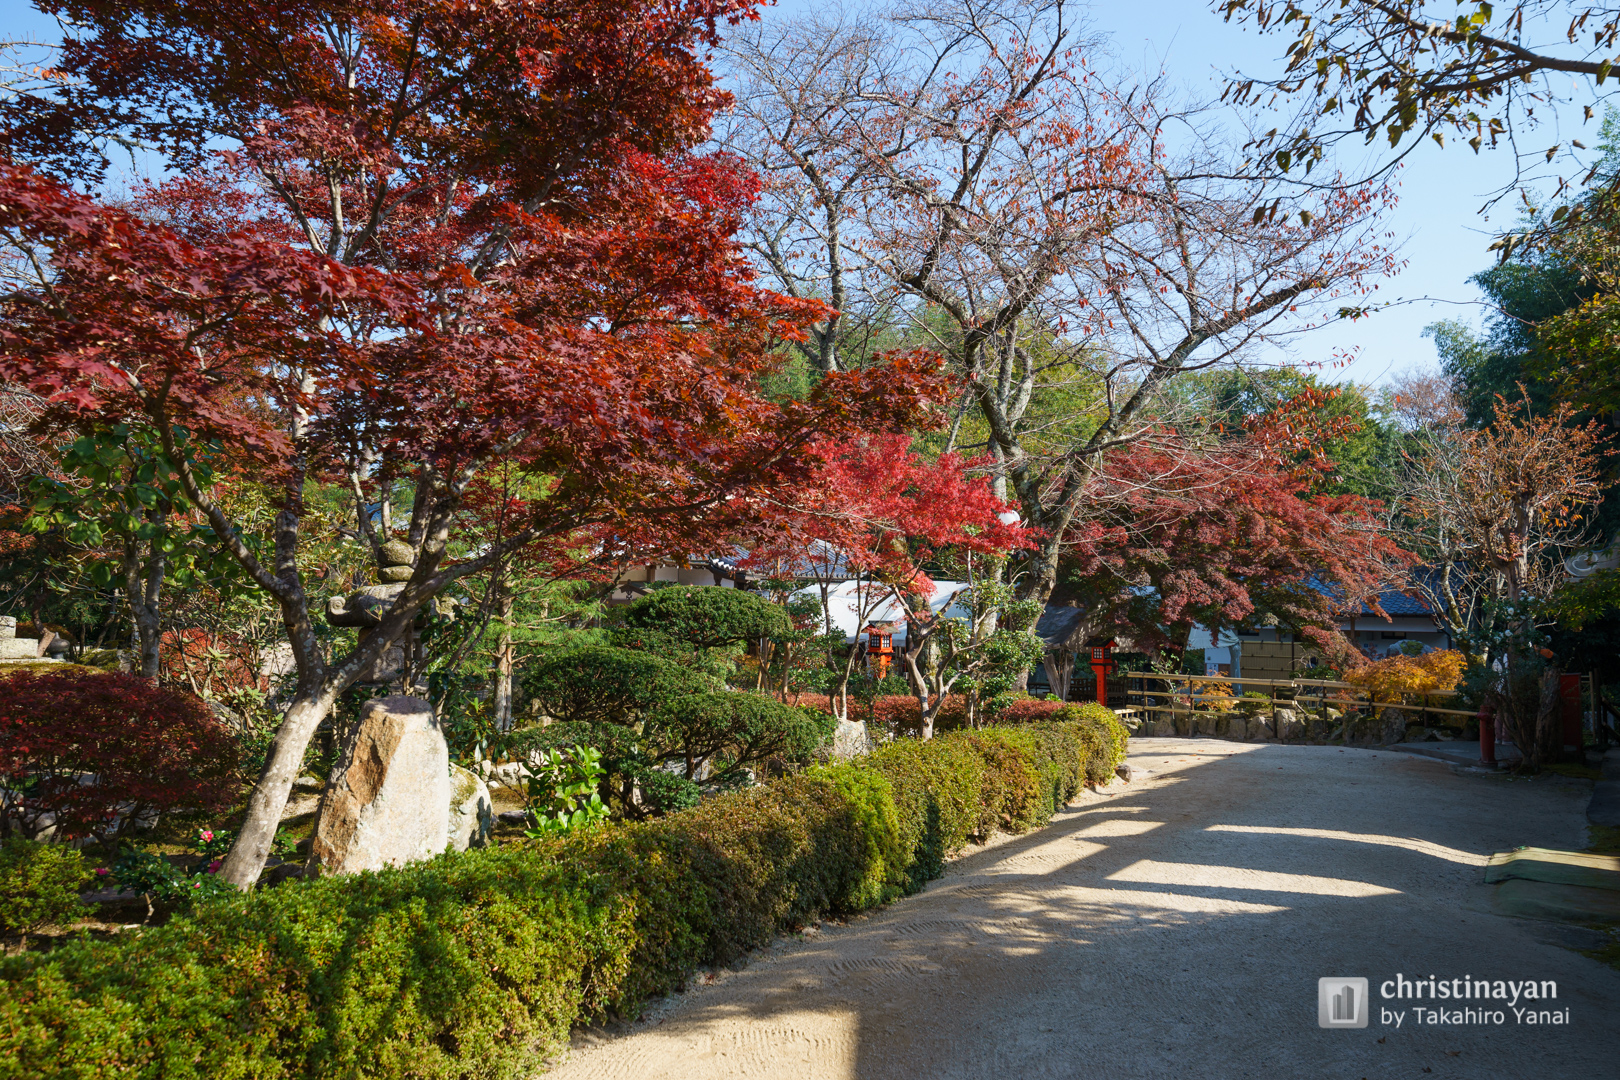 Garden of Ritsuin (律院)